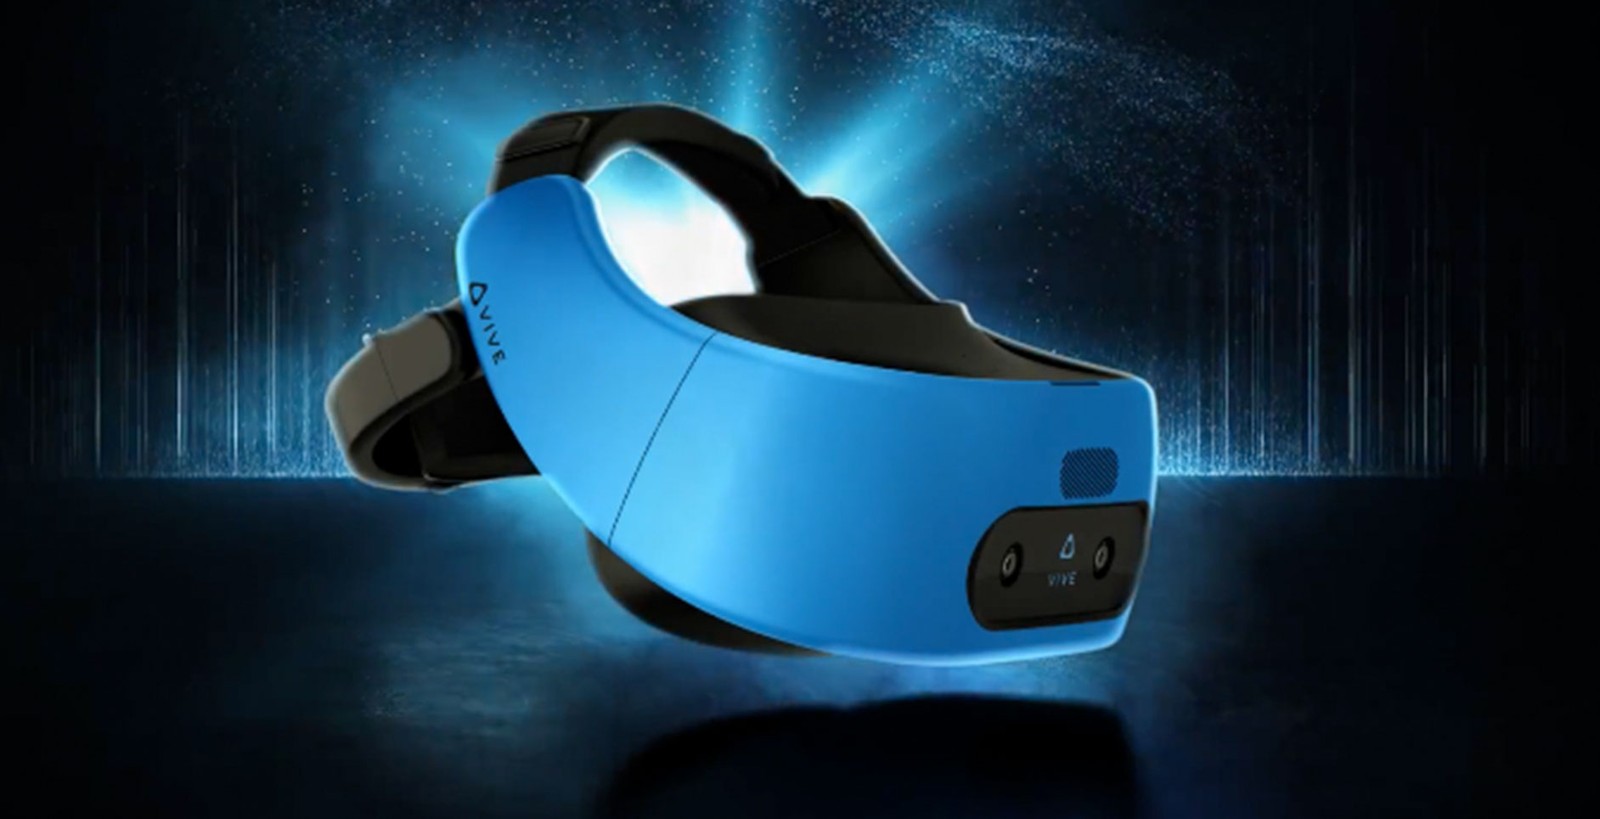 HTC pokazało bezprzewodowy zestaw VR – Vive Focus